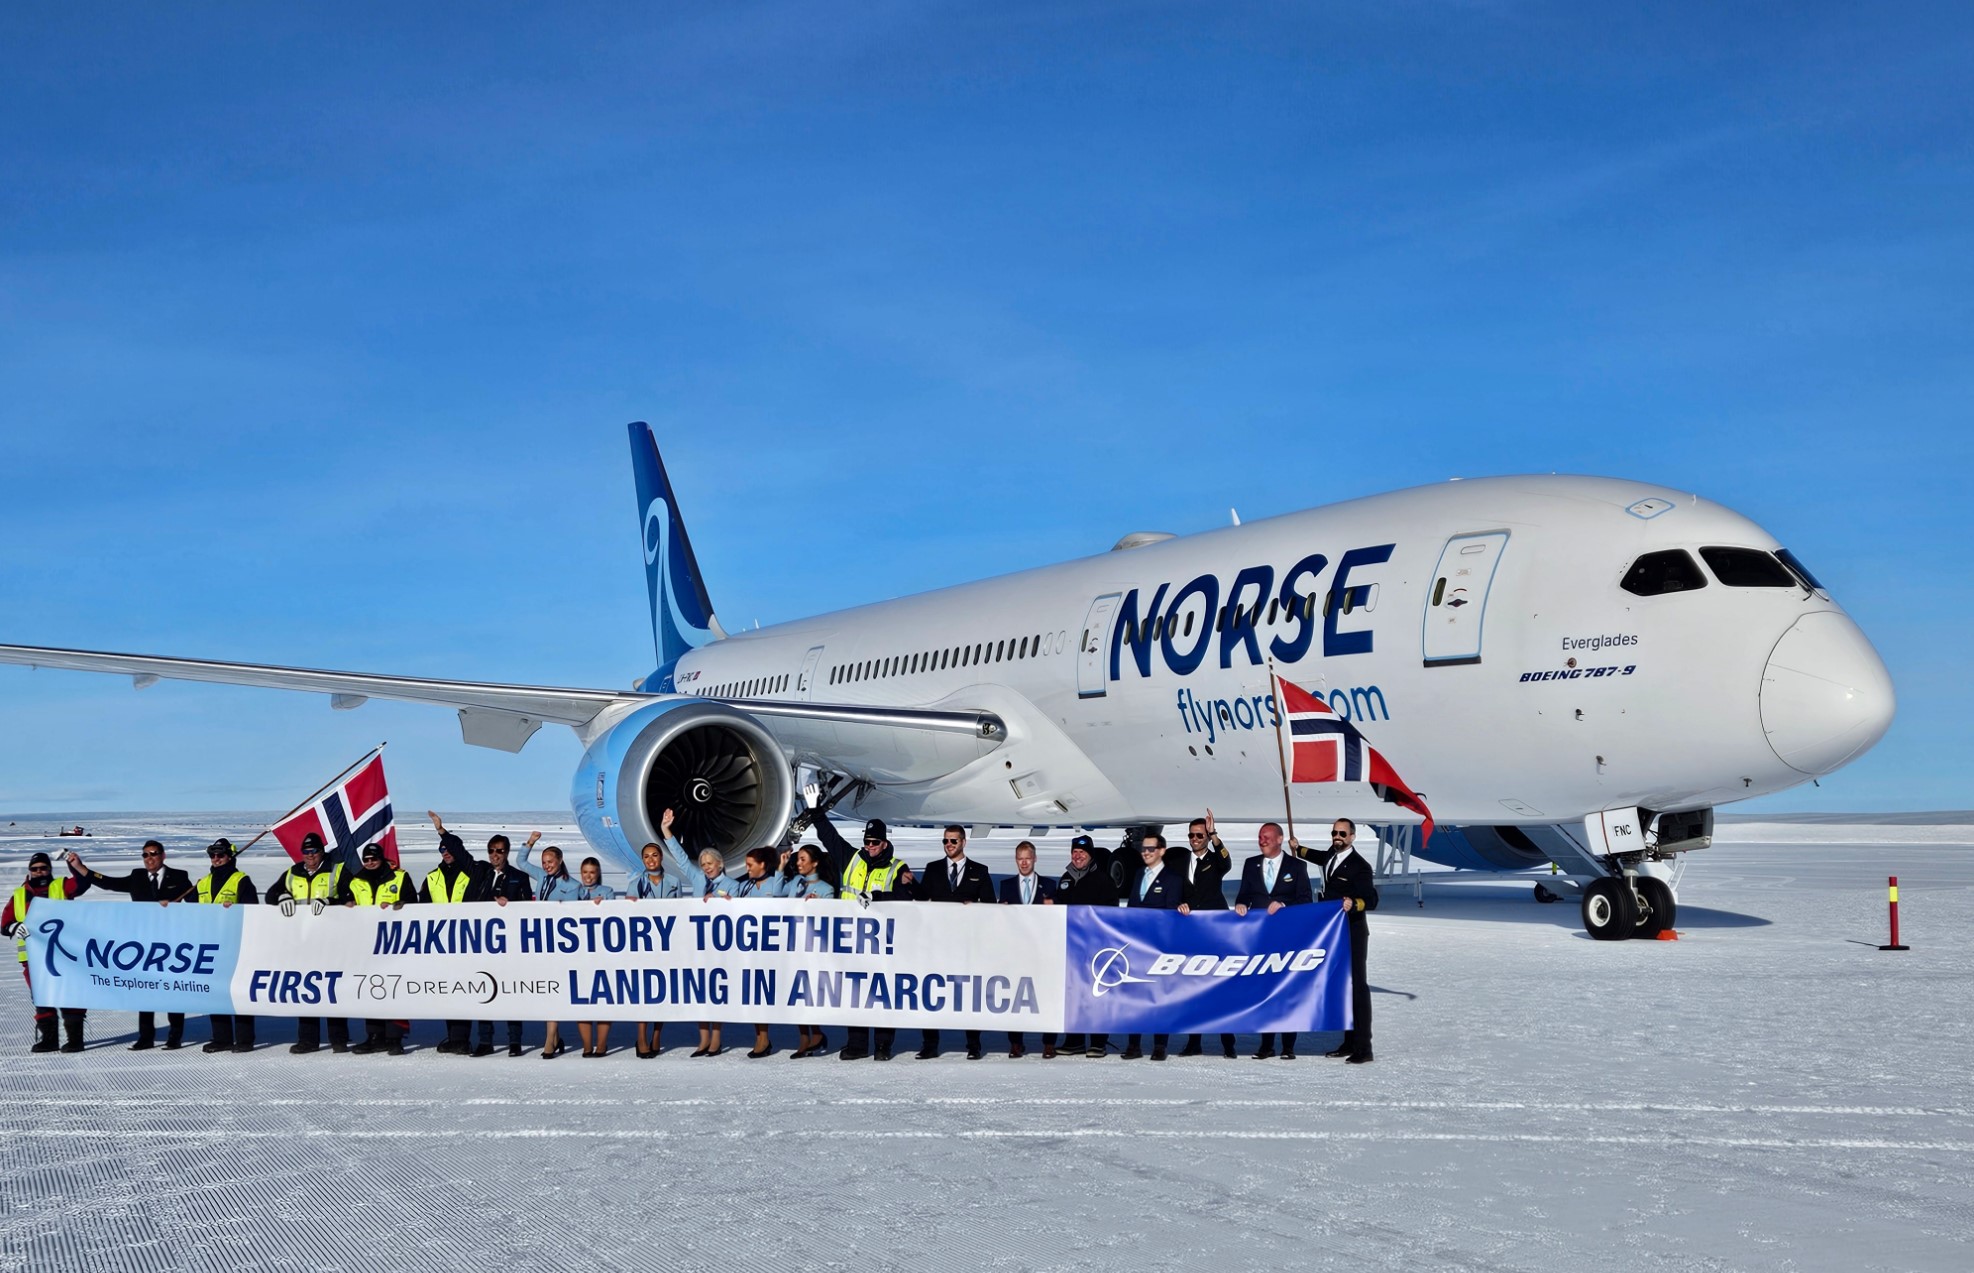 波音787 梦想飞机首次降落南极